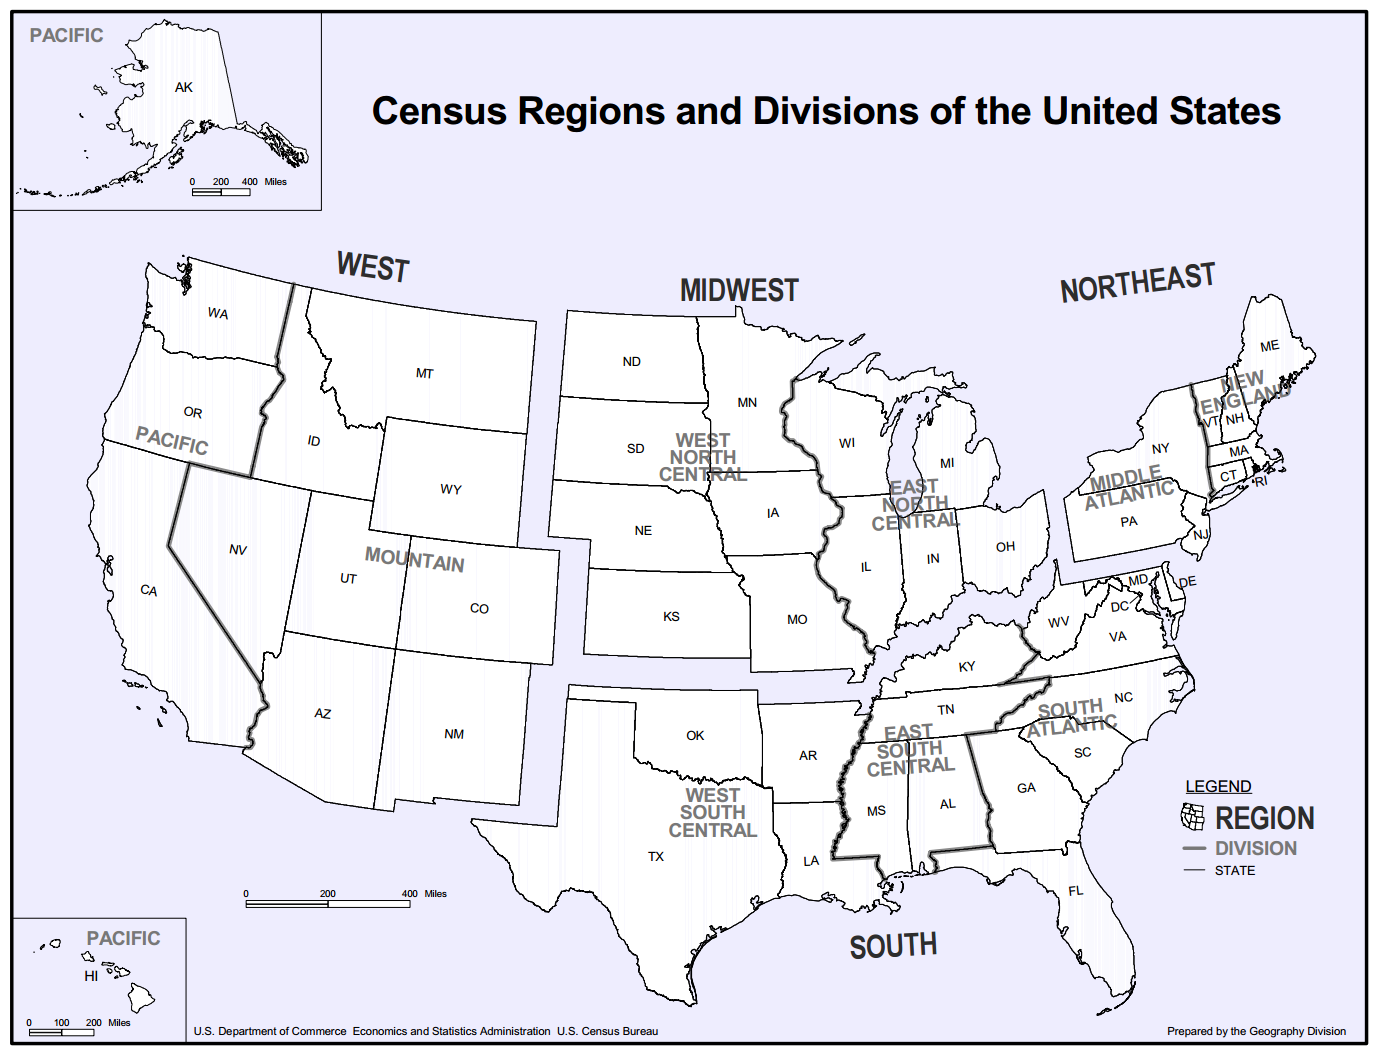 US Census Bureau census regions and divisions of the United States